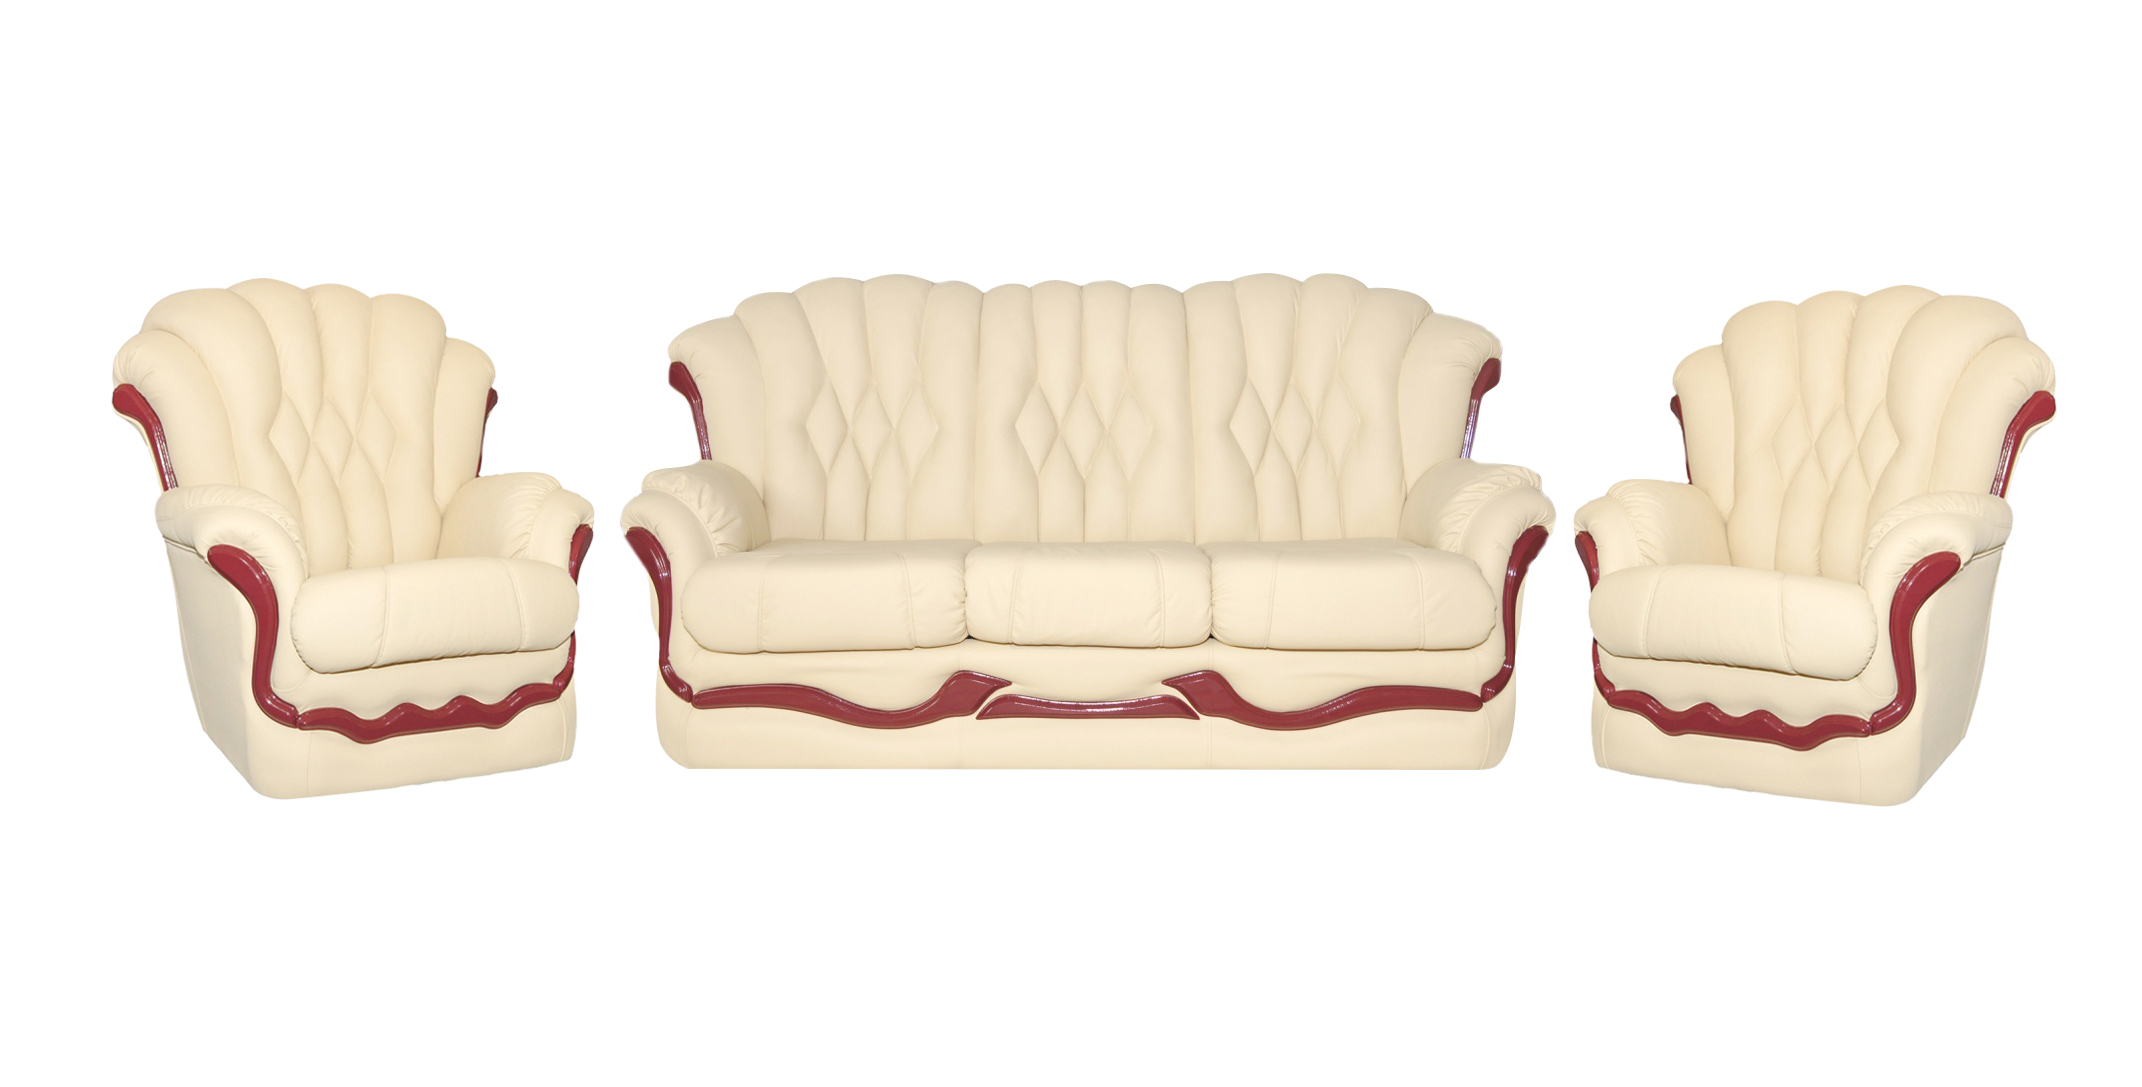 Мебель диваны кресла недорого. Комплект мягкой мебели (диван и кресло) модель «Форест». Комплект (софа + 2 кресла) Cezar. Мягкая мебель Пронто-3 диван 2 кресла. Комплект мягкой мебели lb 2037l "Dirty ОАК".